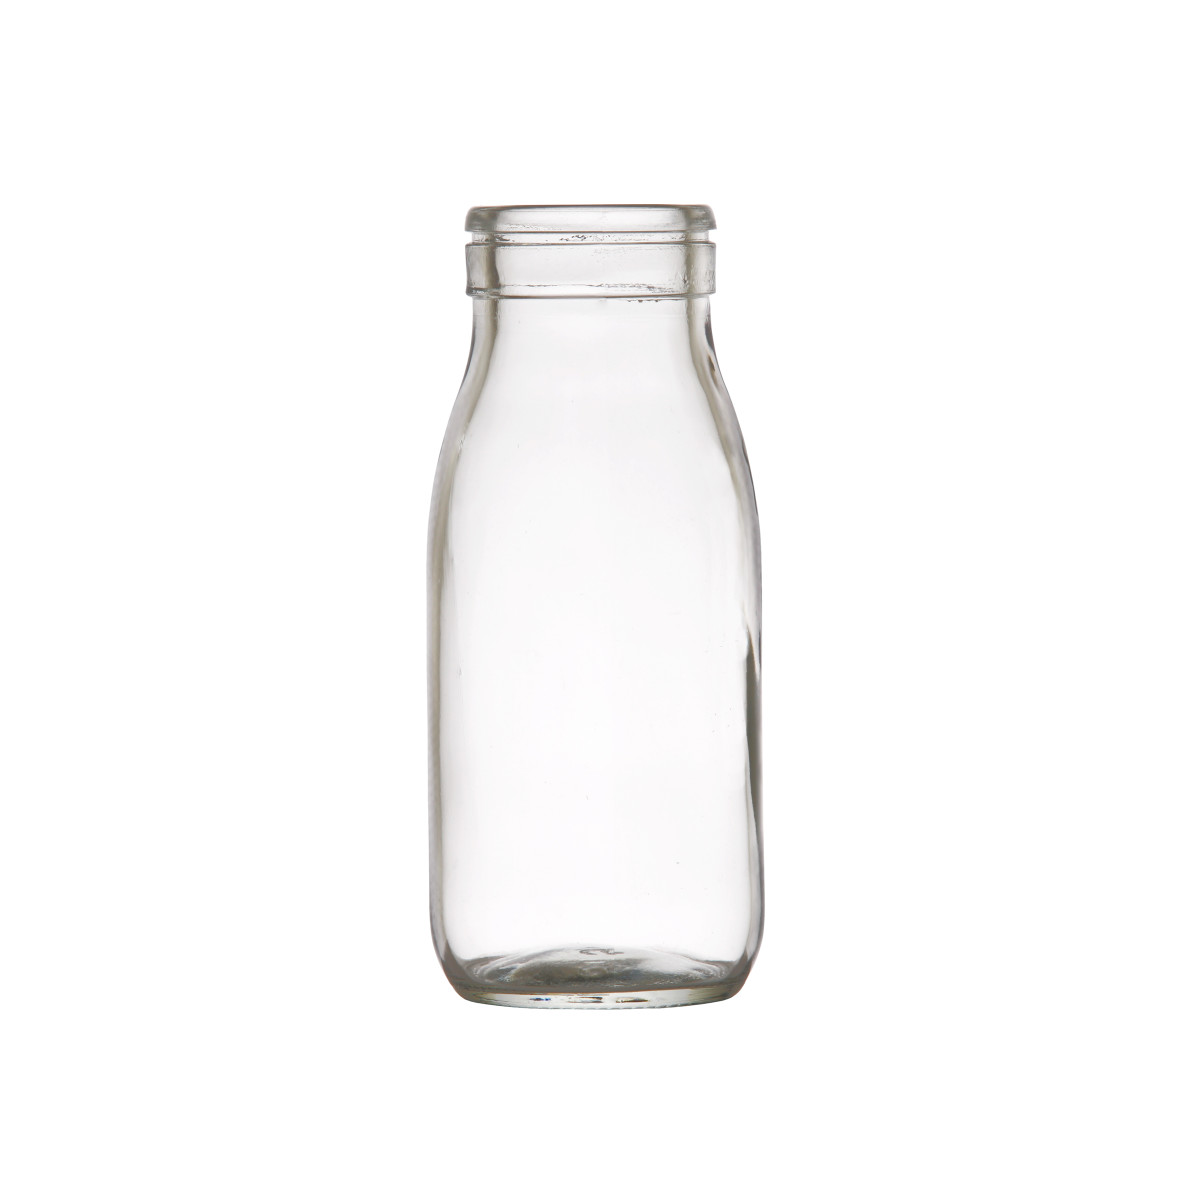 Tasterz™ Mini Milk Bottle 9oz